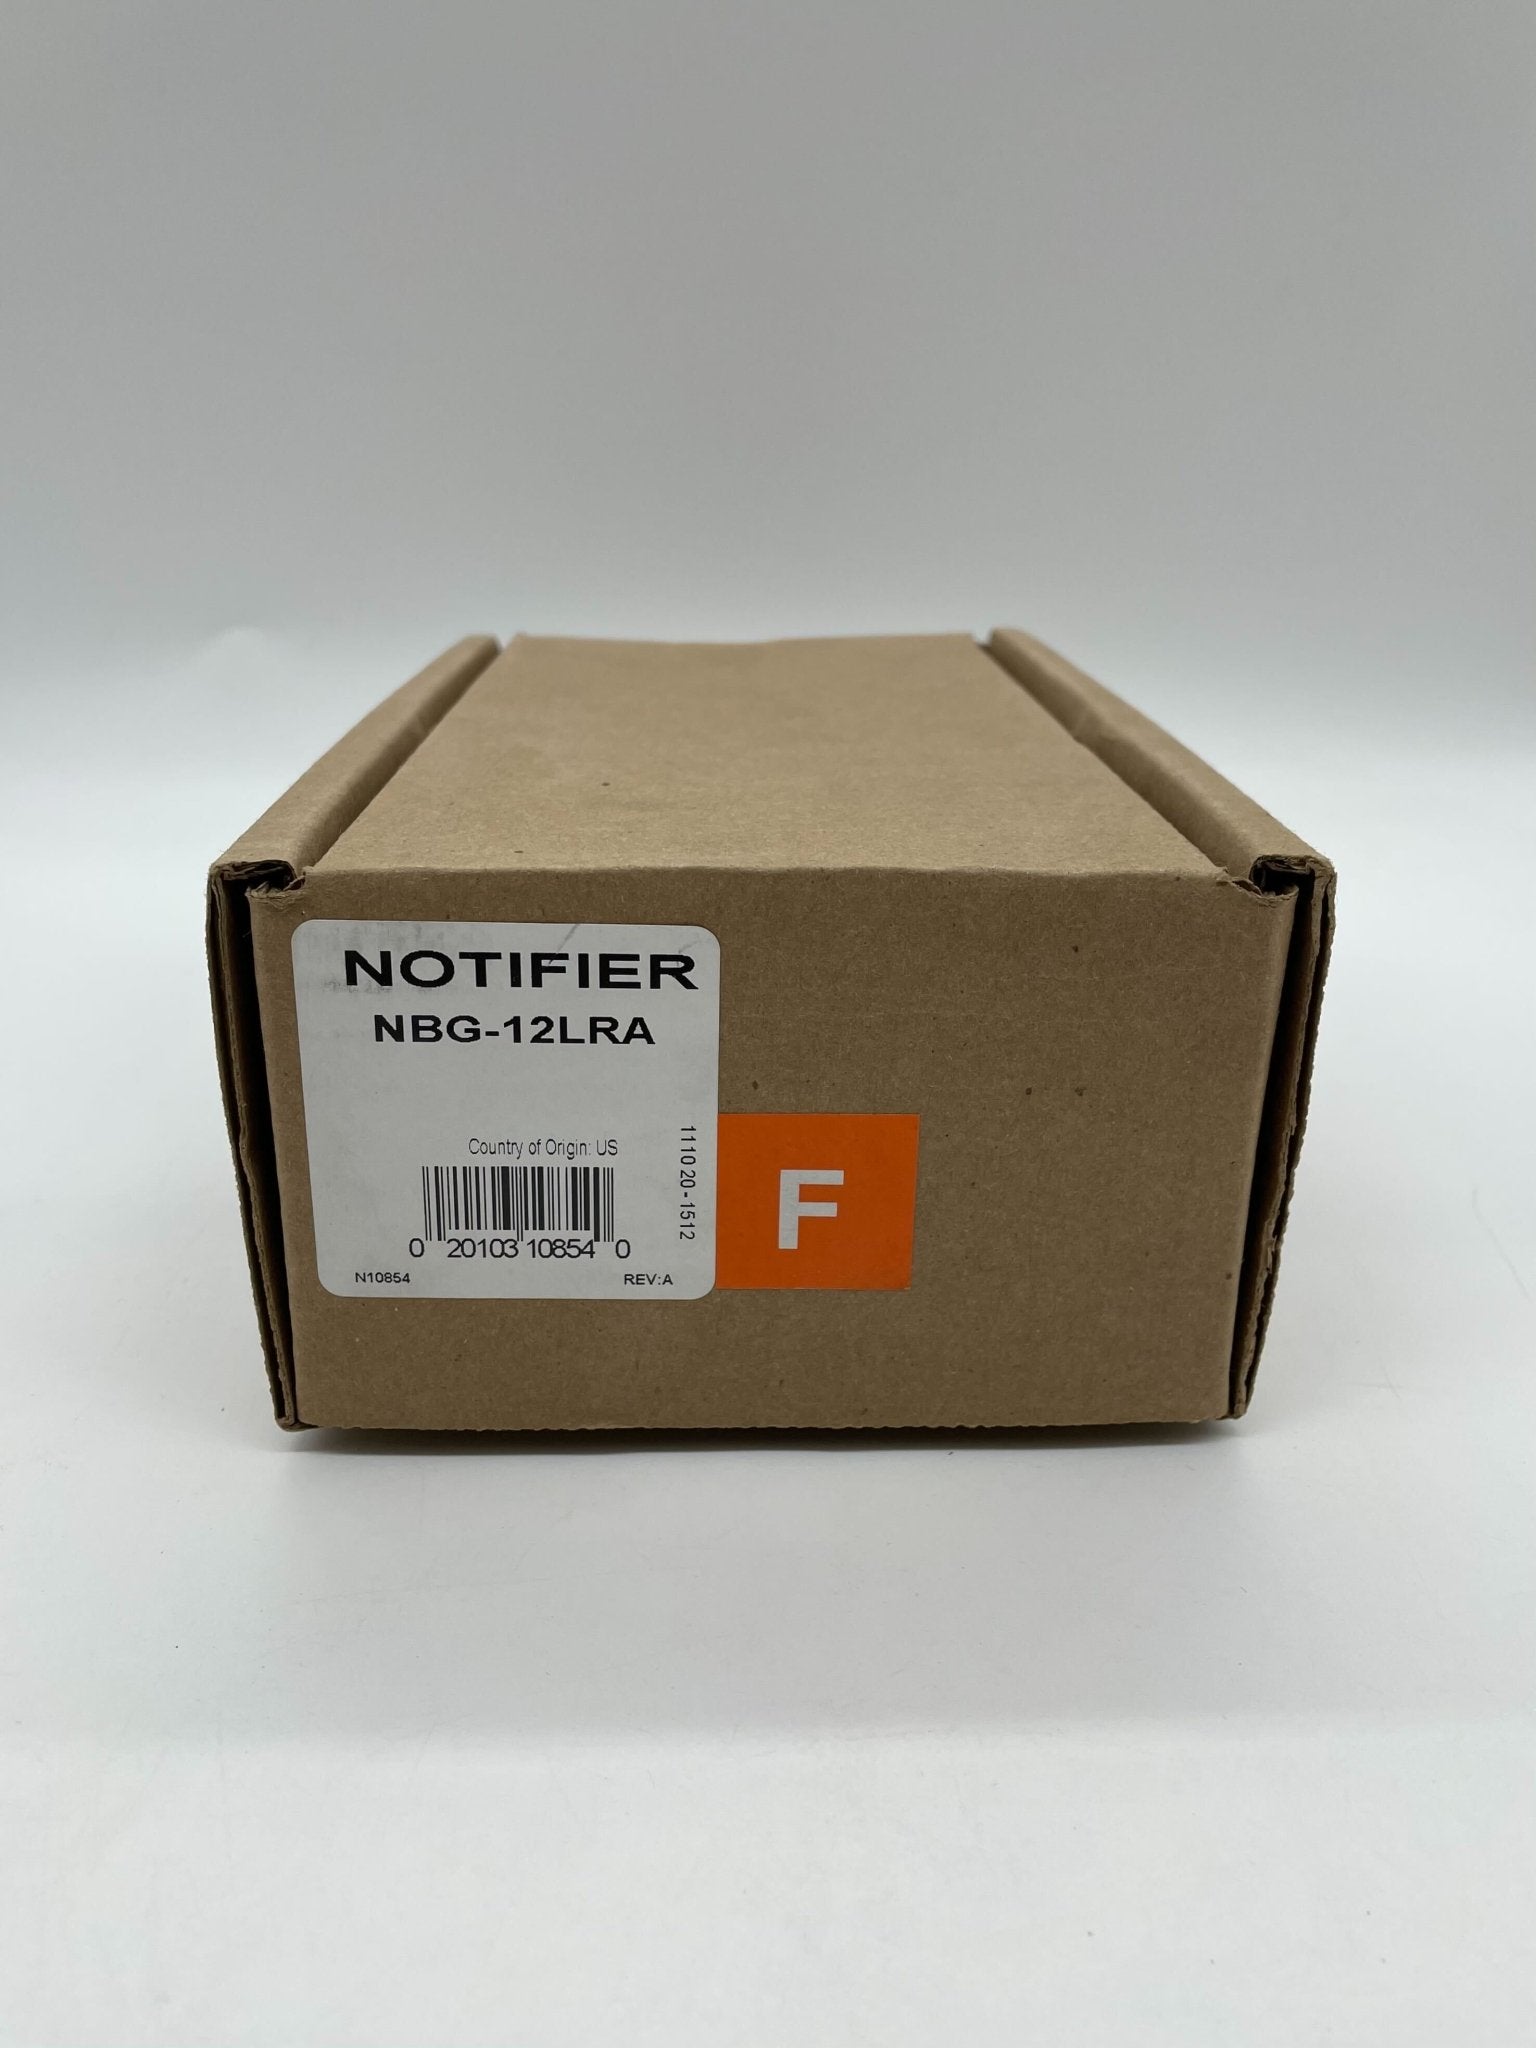 Notifier NBG-12LRA - The Fire Alarm Supplier